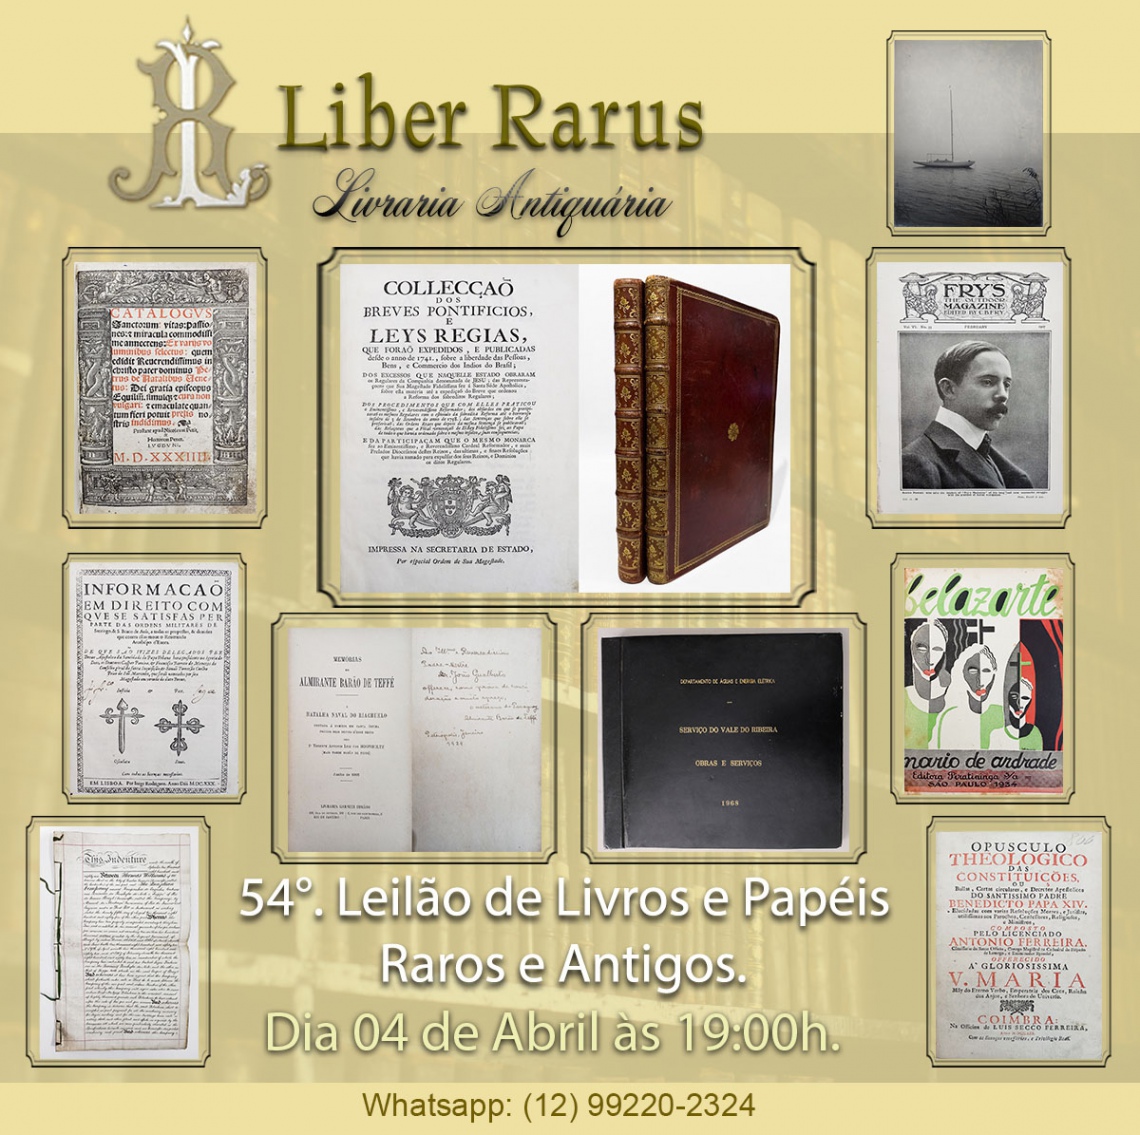 54º Leilão de Livros e Papéis Raros e Antigos - Liber Rarus